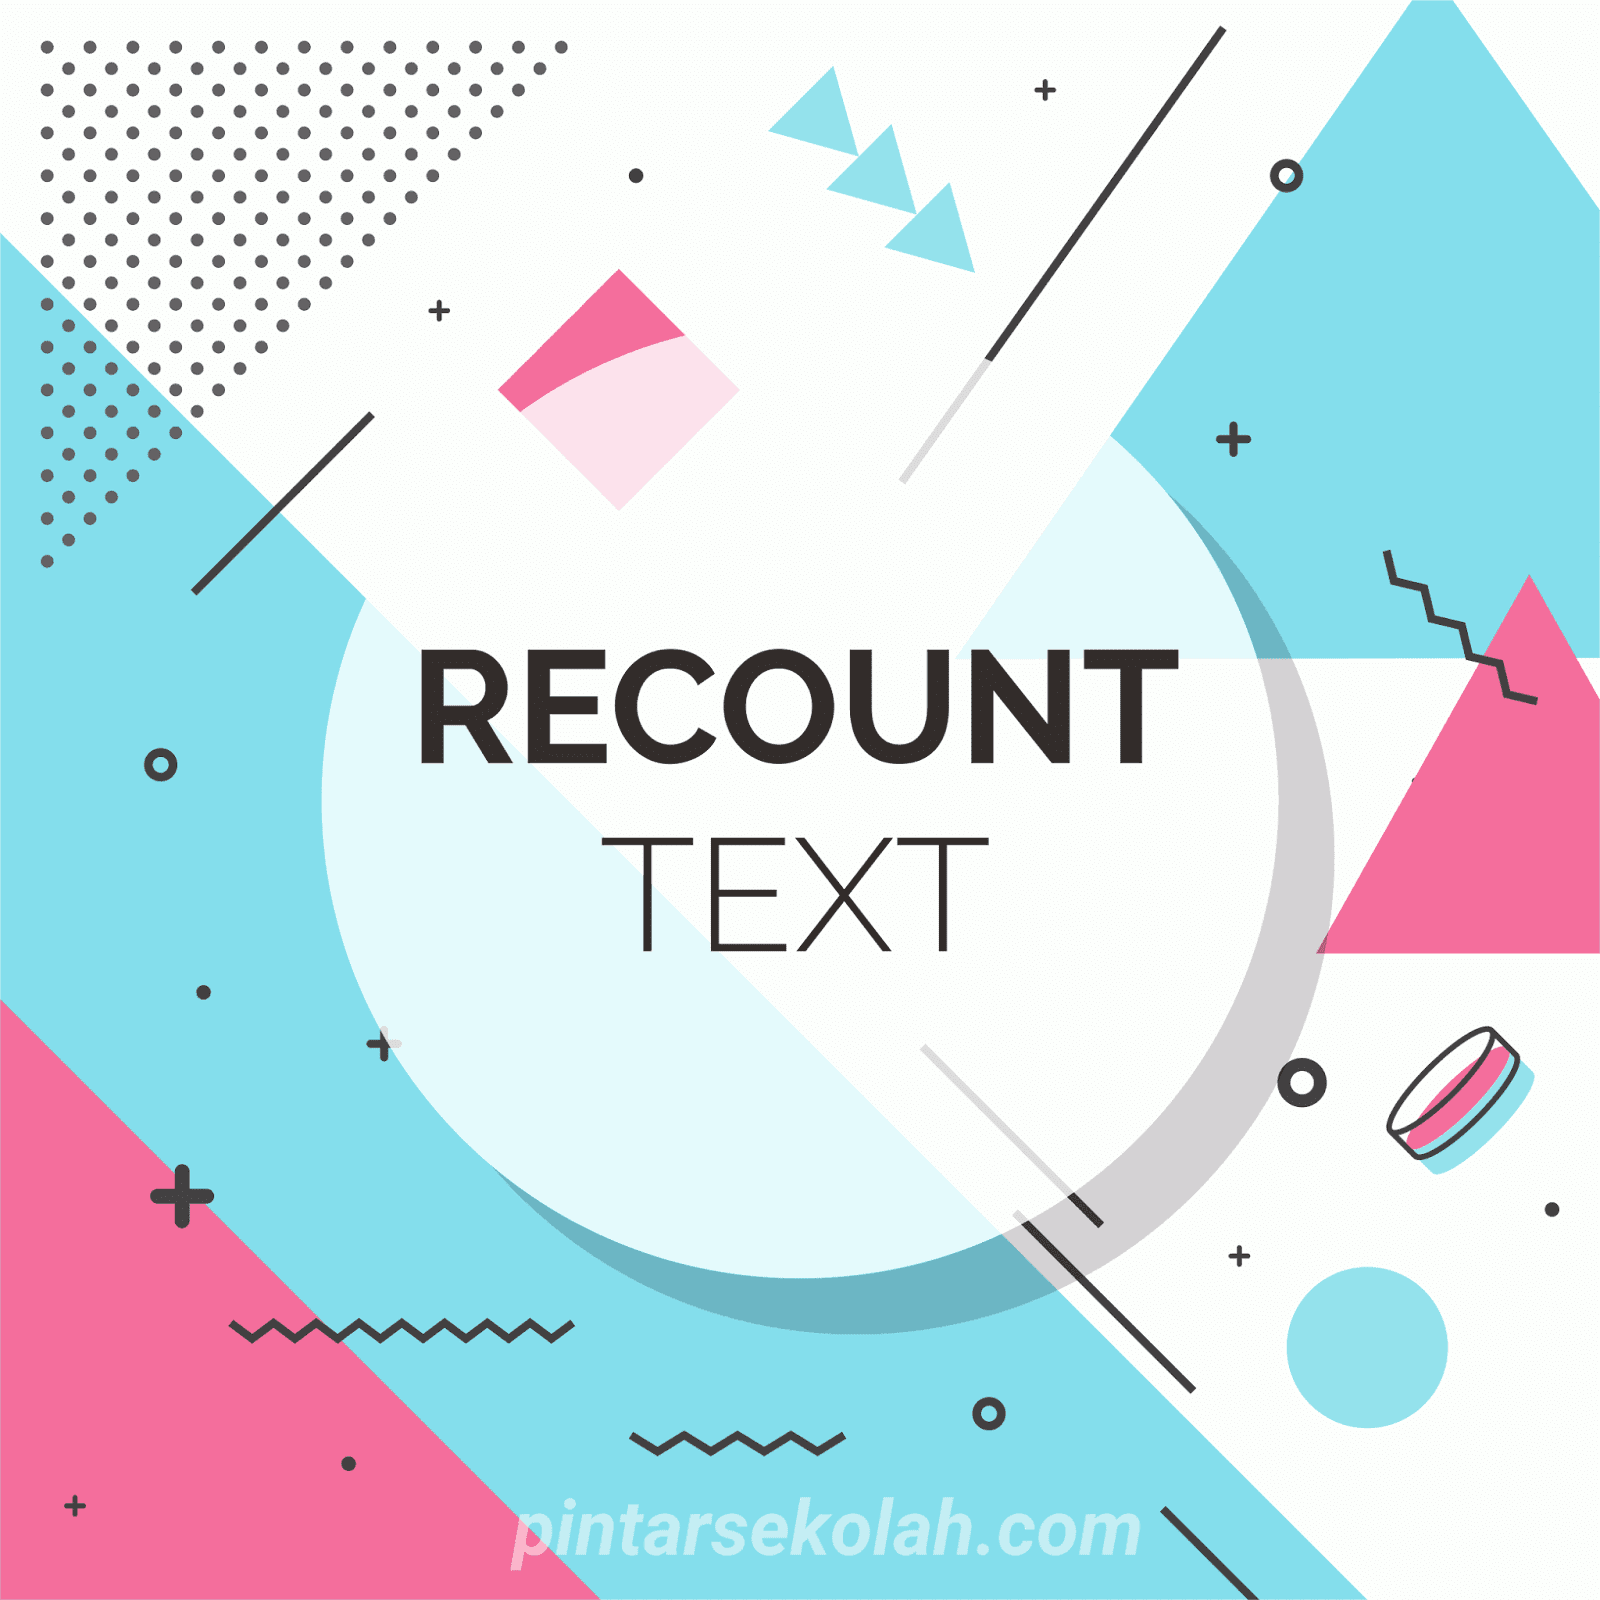 contoh recount text panjang